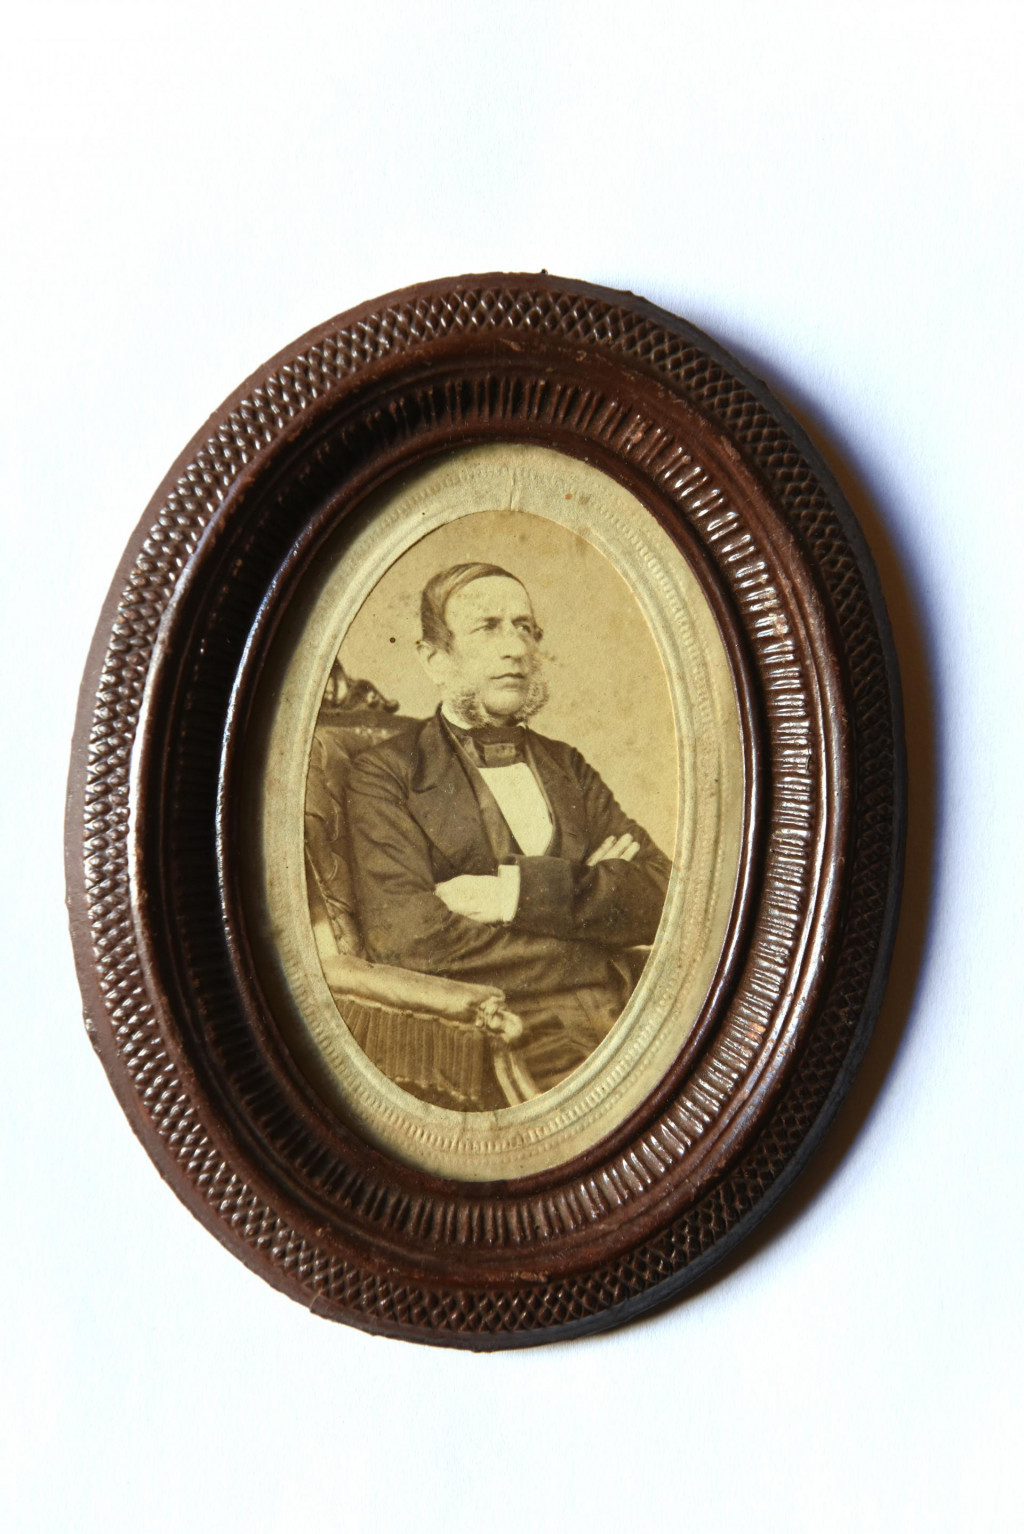 &lt;p&gt;Portret Antuna Drobca (1810. - 1882.) iz Zbirke fotografija i fotografskog materijala Kulturno–povijesnog muzeja Dubrovačkih muzeja&lt;/p&gt;